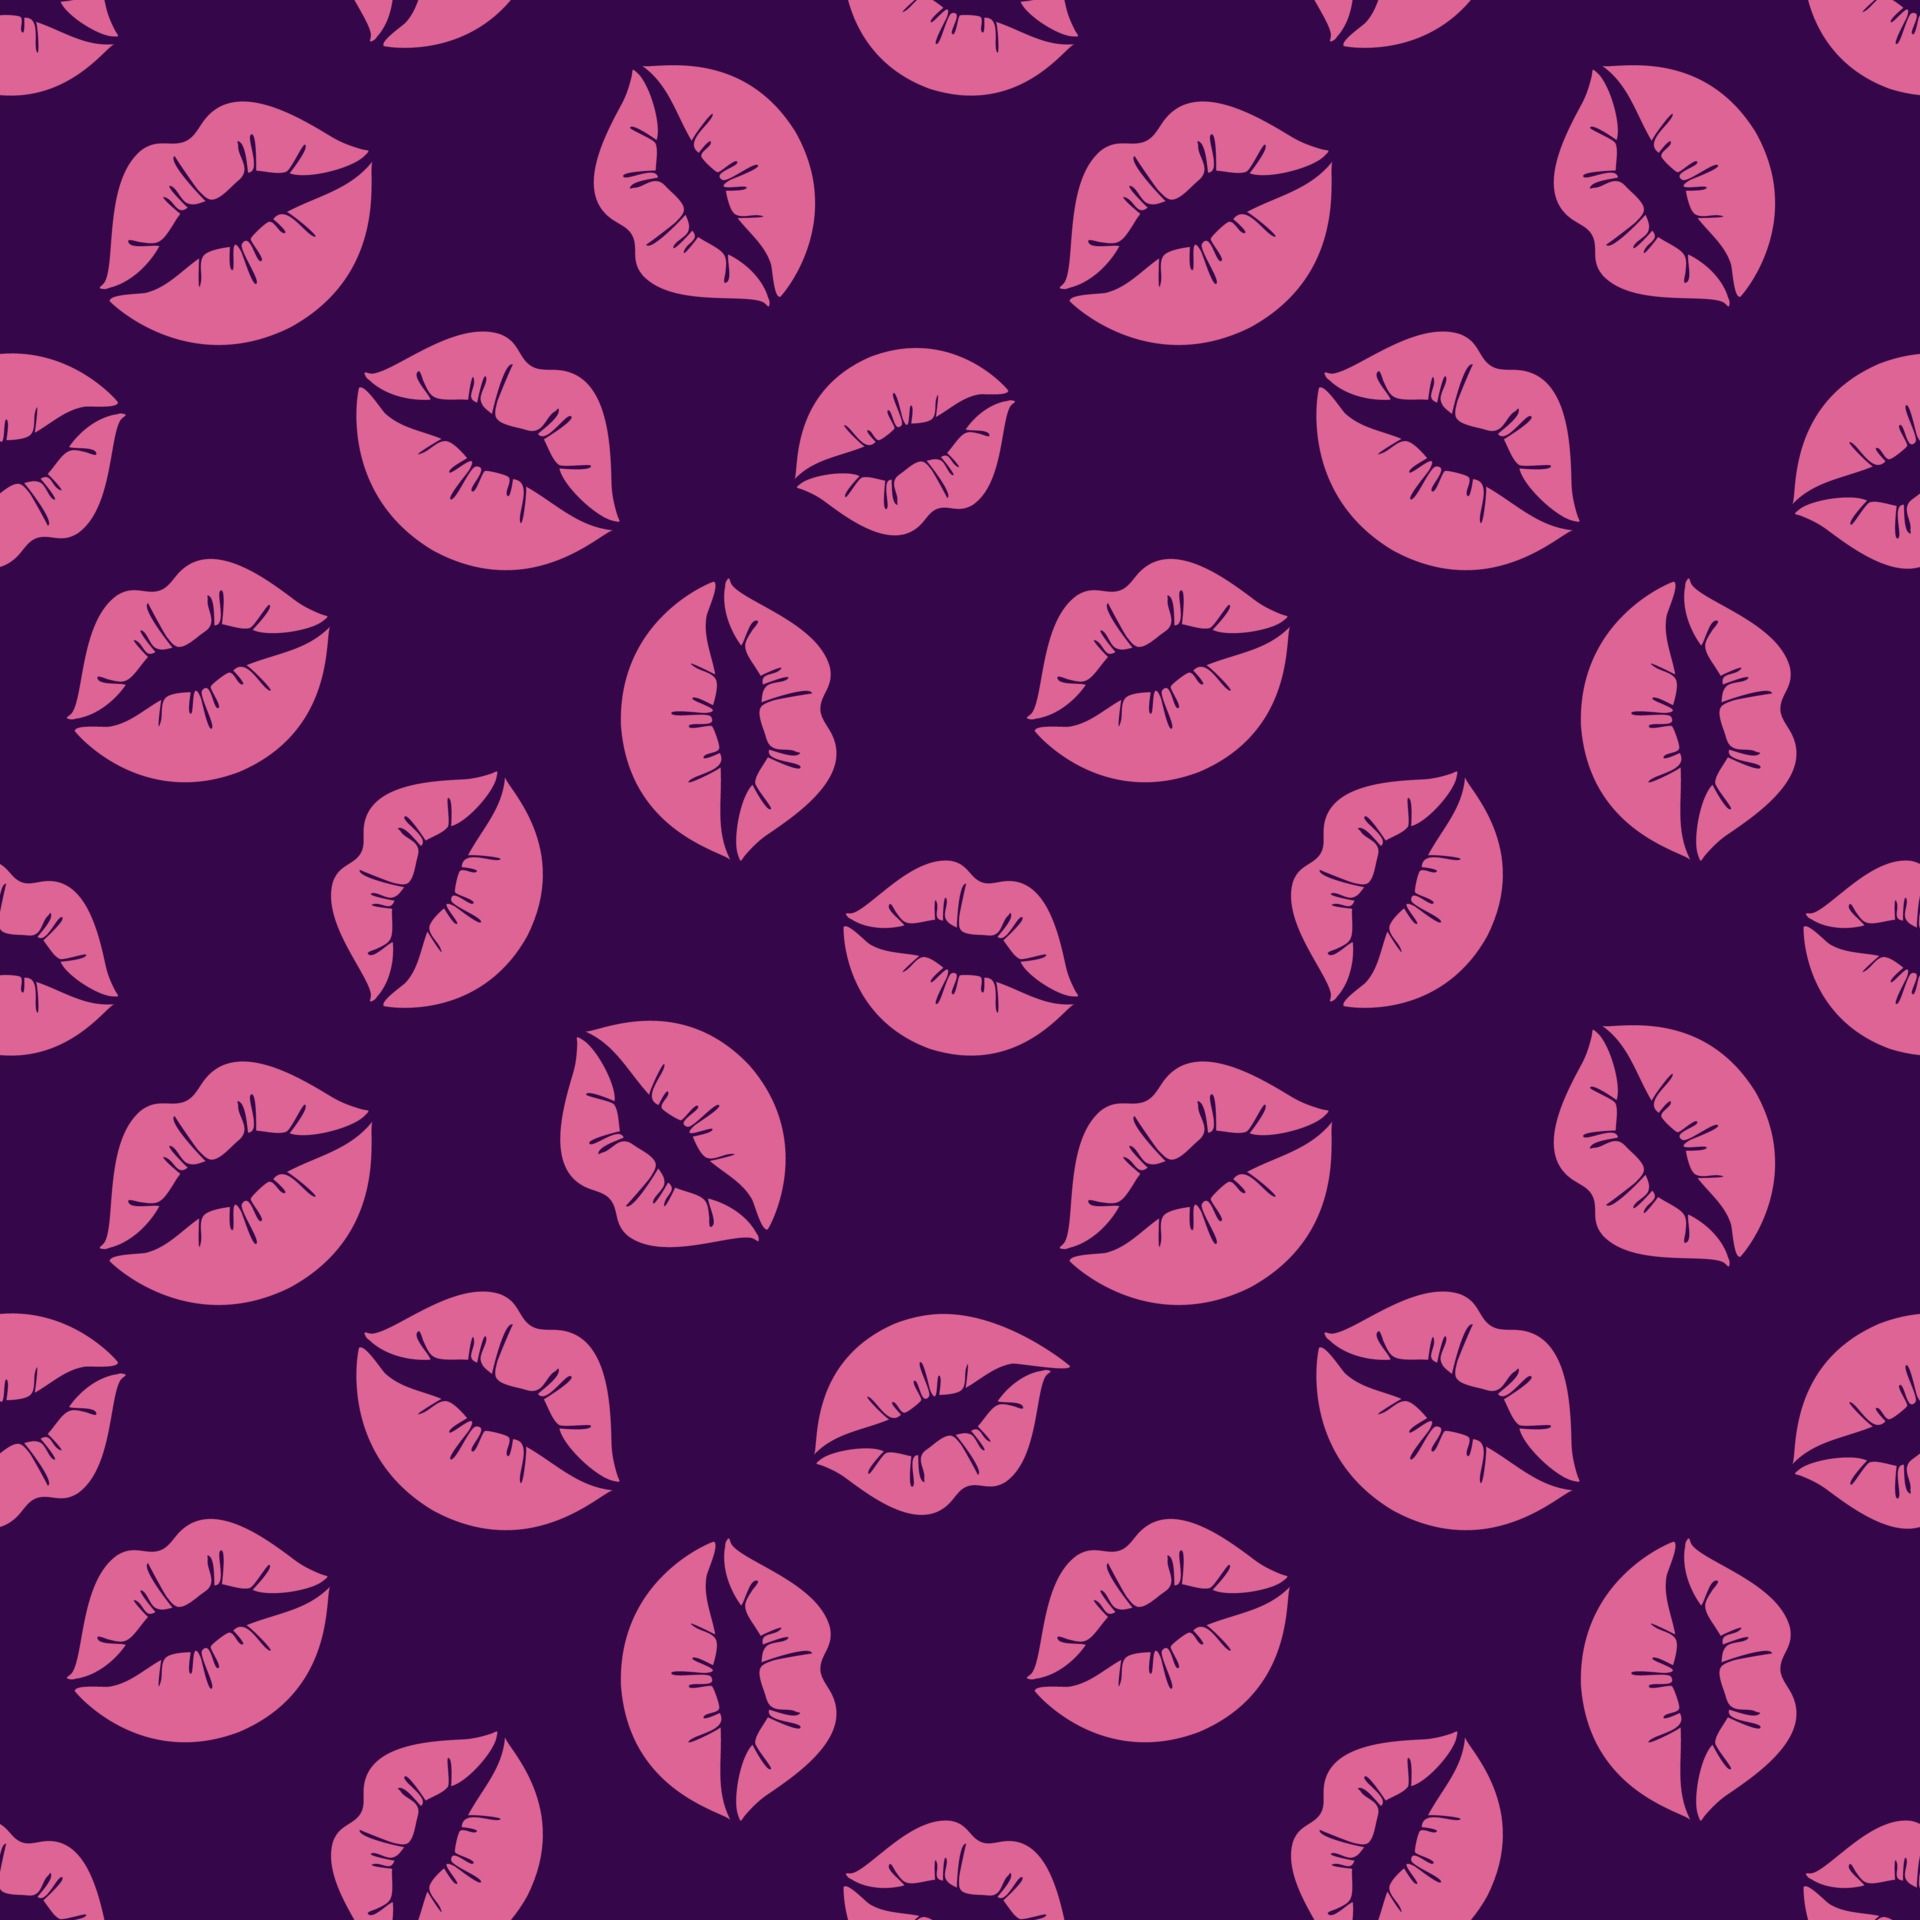  Leuchtend Hintergrundbild 1920x1920. leuchtend rosa Lippen nahtloses Muster. Valentinstag, rosa Lippen, Küsse auf einem dunklen Hintergrund. flache Illustration des Vektors 2419523 Vektor Kunst bei Vecteezy